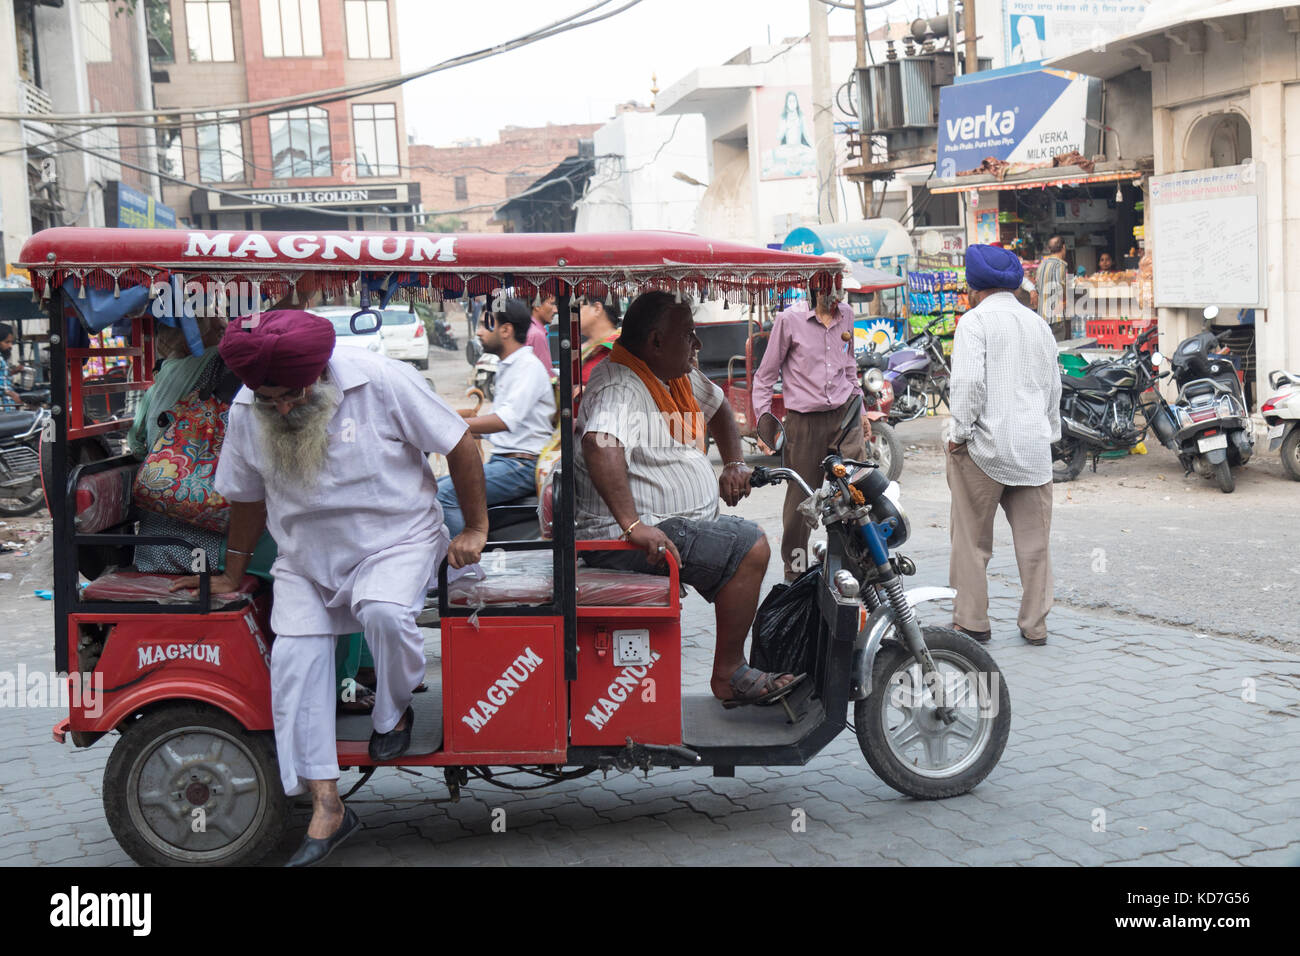 Amritsar, panjab, India. Il 10 ottobre 2017. trafficata strada locale nei pressi del tempio dorato. Molti rickshaws, scooter e tre wheeler transiti. amritsar è la città santa della religione sikh e milioni di turisti visitano ogni anno. Foto Stock